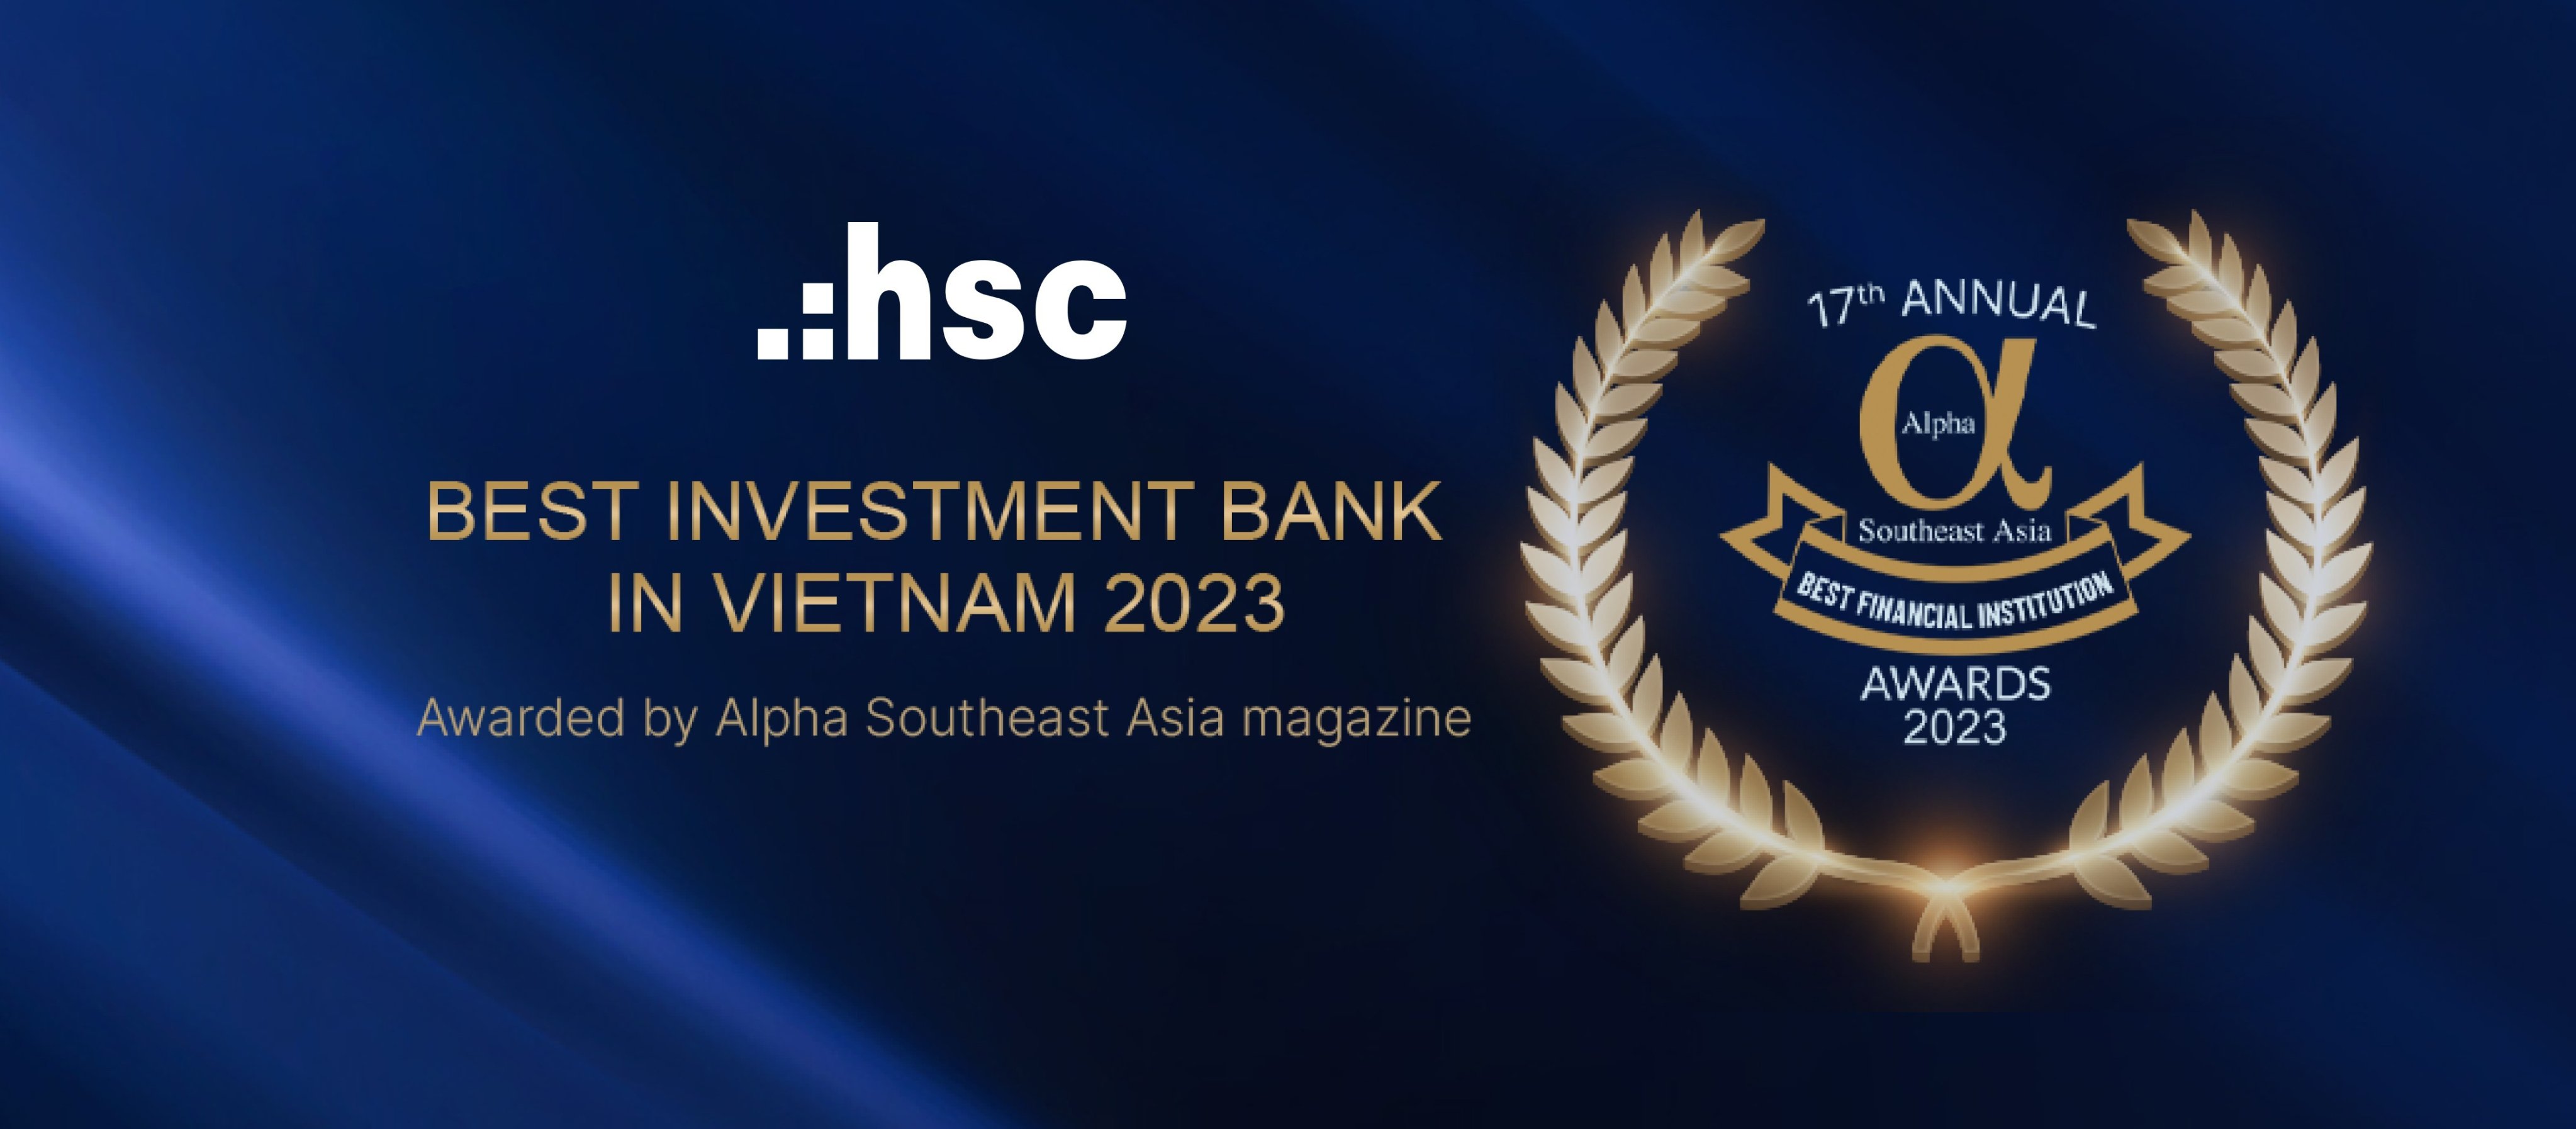 HSC - “Ngân hàng đầu tư tốt nhất Việt Nam 2023” – Vinh danh bởi Alpha Southeast Asia